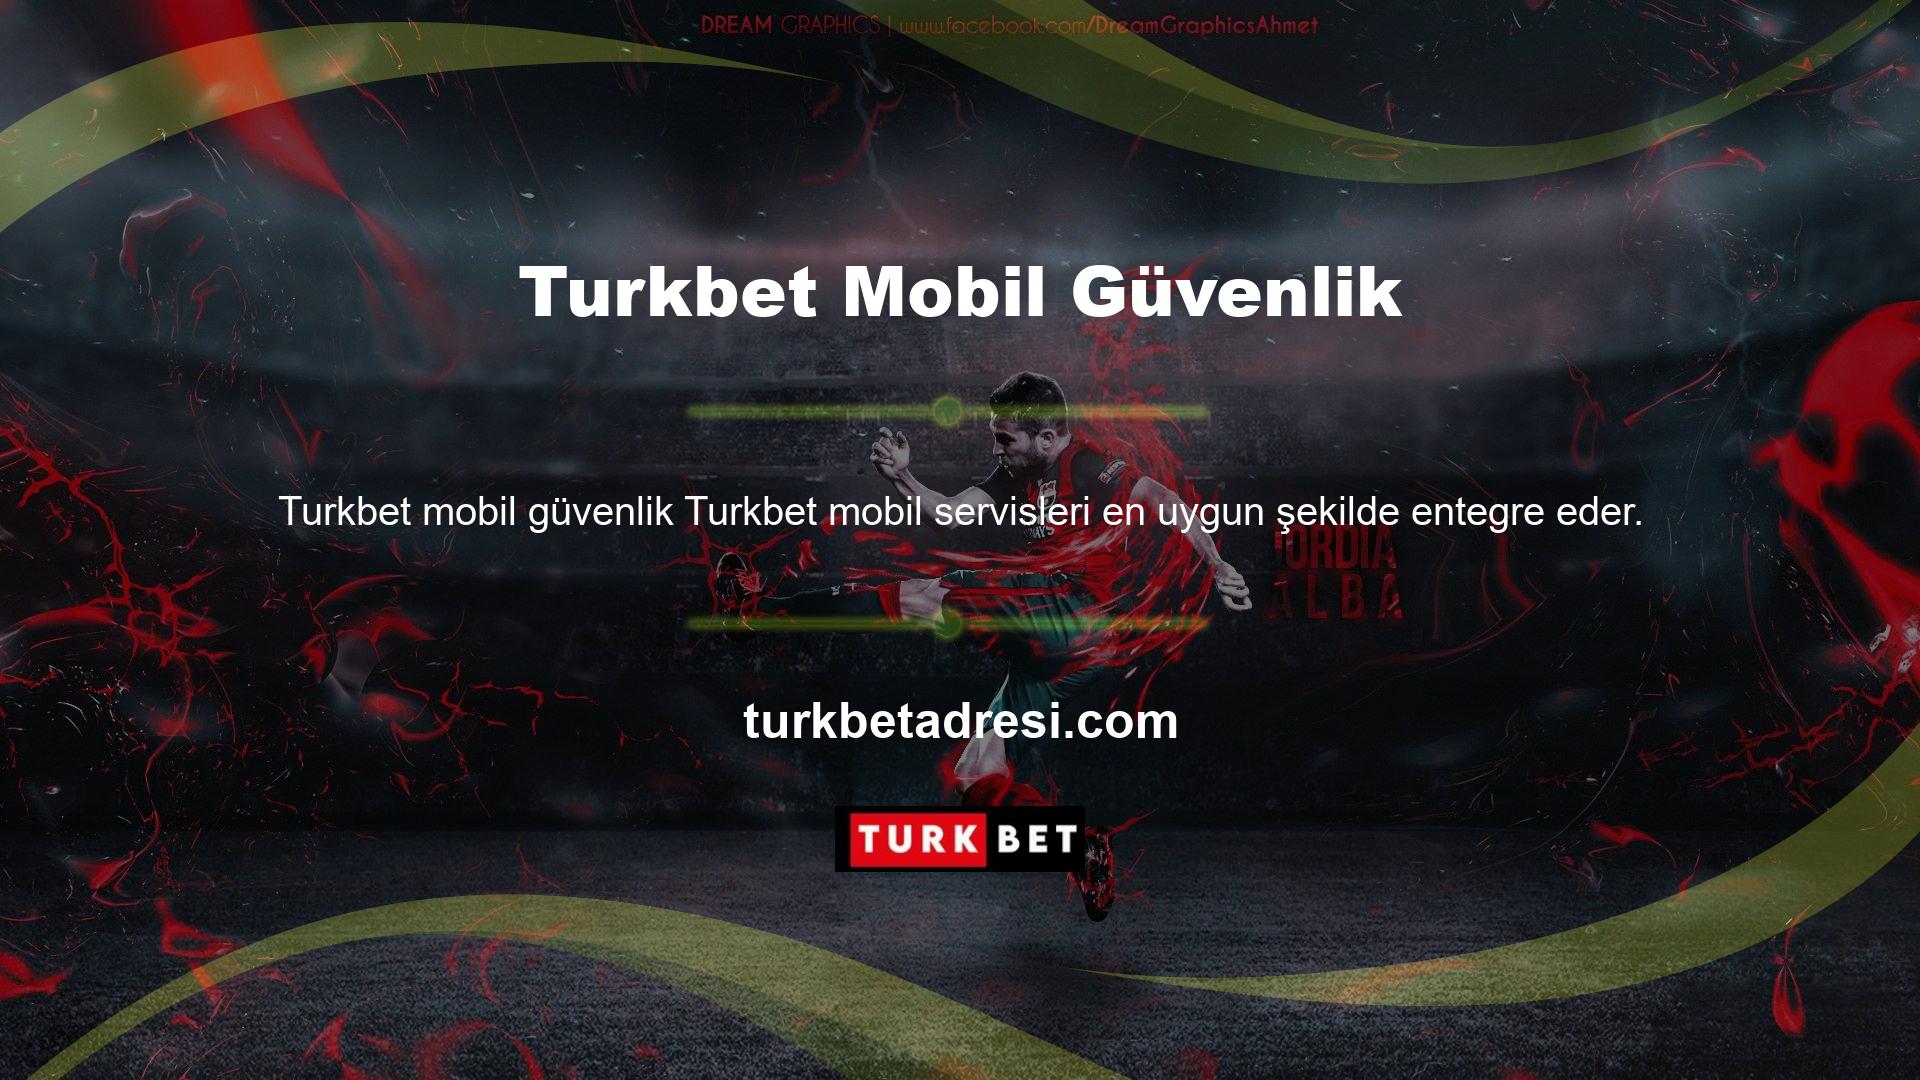 Akıllı telefonunuzda Turkbet Mobile Security'nin veya tabletinizde oyunlarımızın keyfini çıkarın